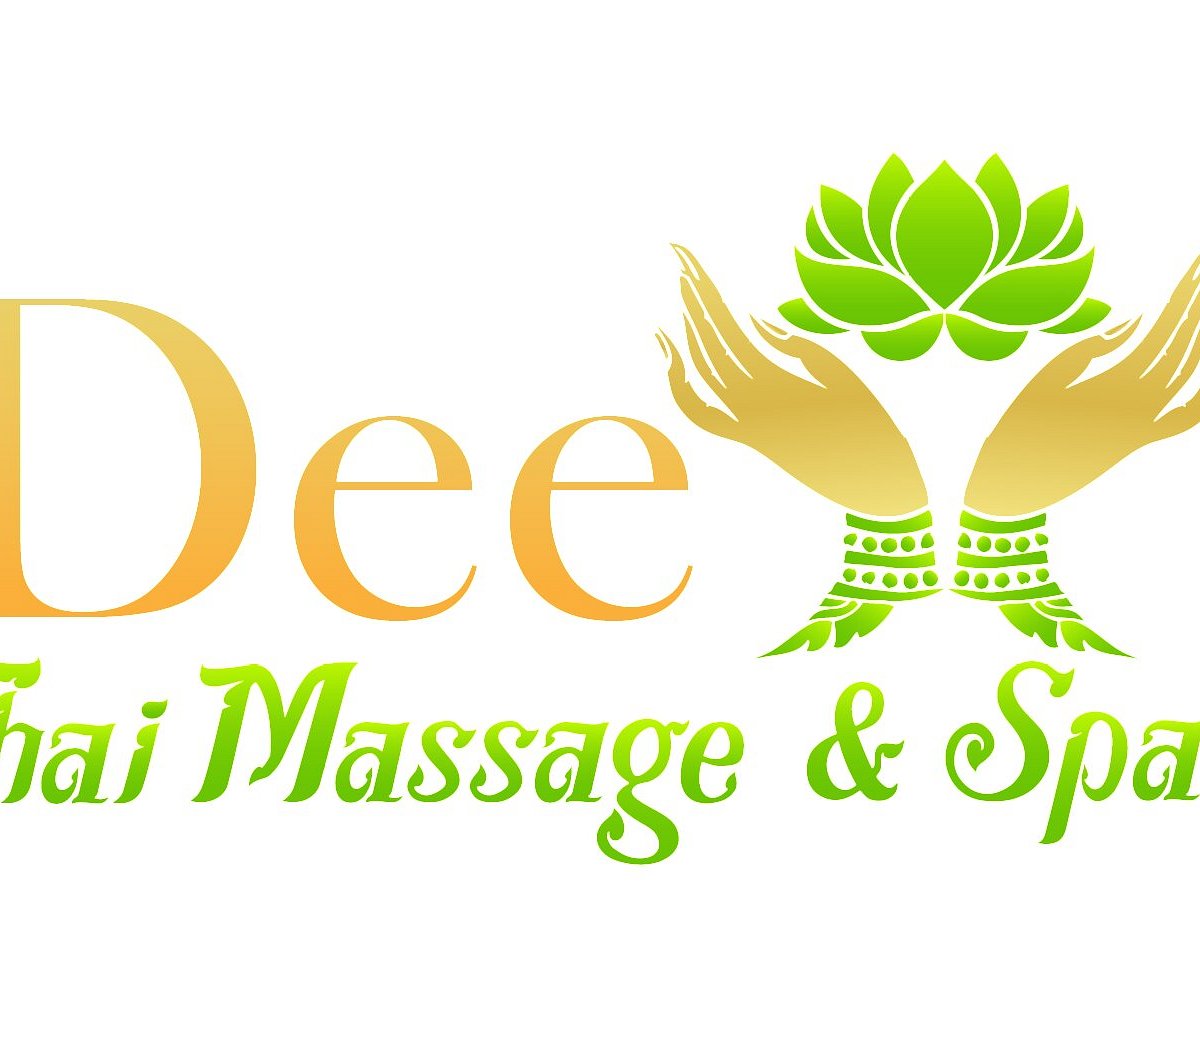 Dee Thai Massage And Spa Las Vegas Ce Qu Il Faut Savoir